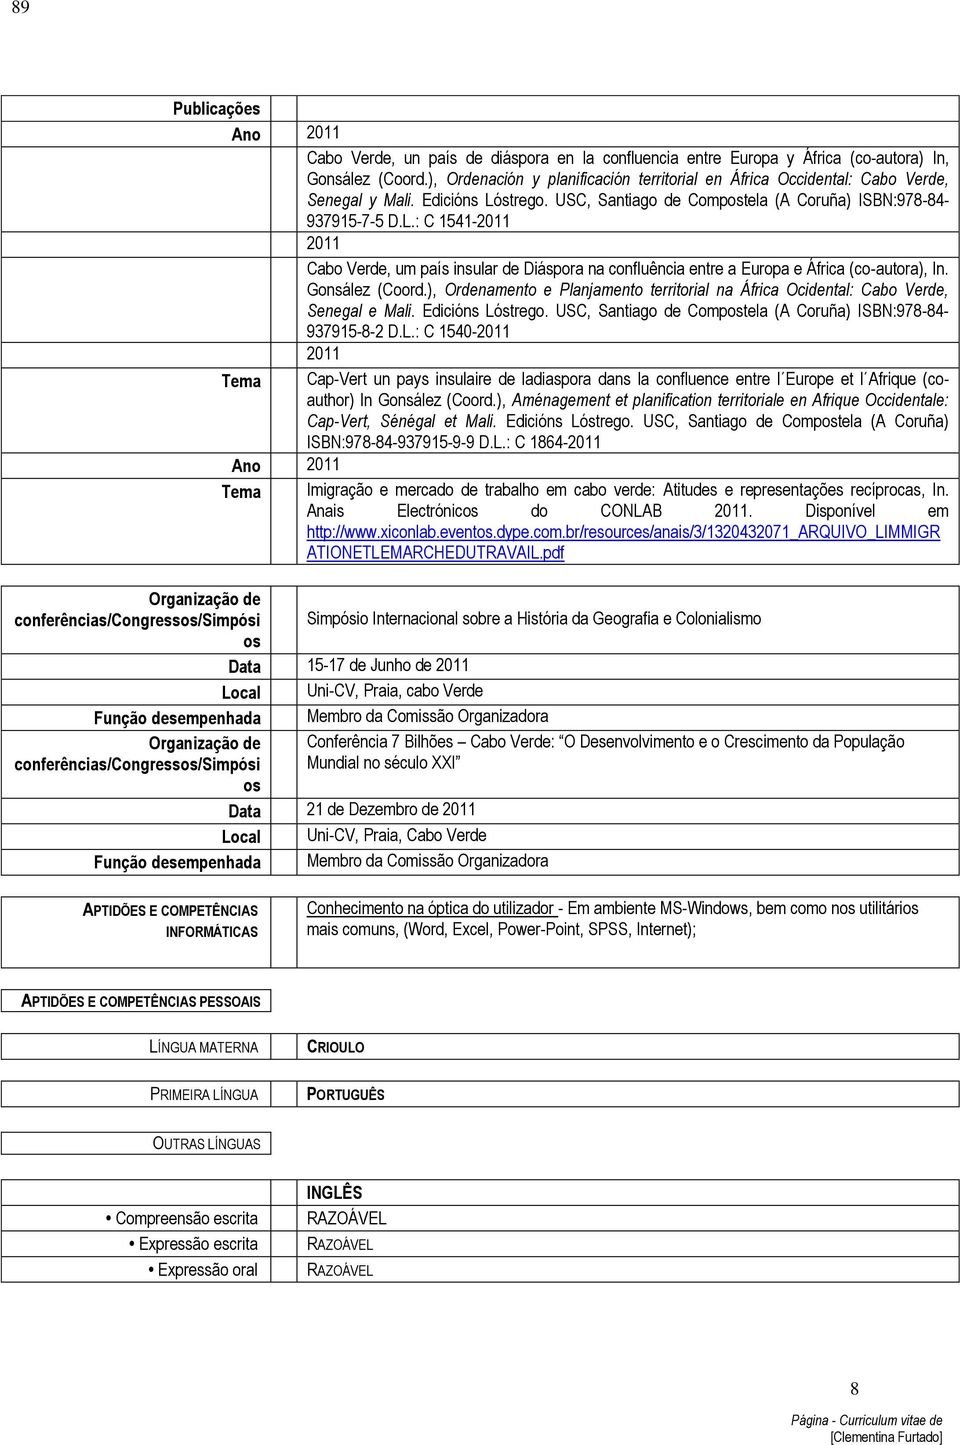 strego. USC, Santiago de Compostela (A Coruña) ISBN:978-84- 937915-7-5 D.L.: C 1541-2011 2011 Cabo Verde, um país insular de Diáspora na confluência entre a Europa e África (co-autora), In.